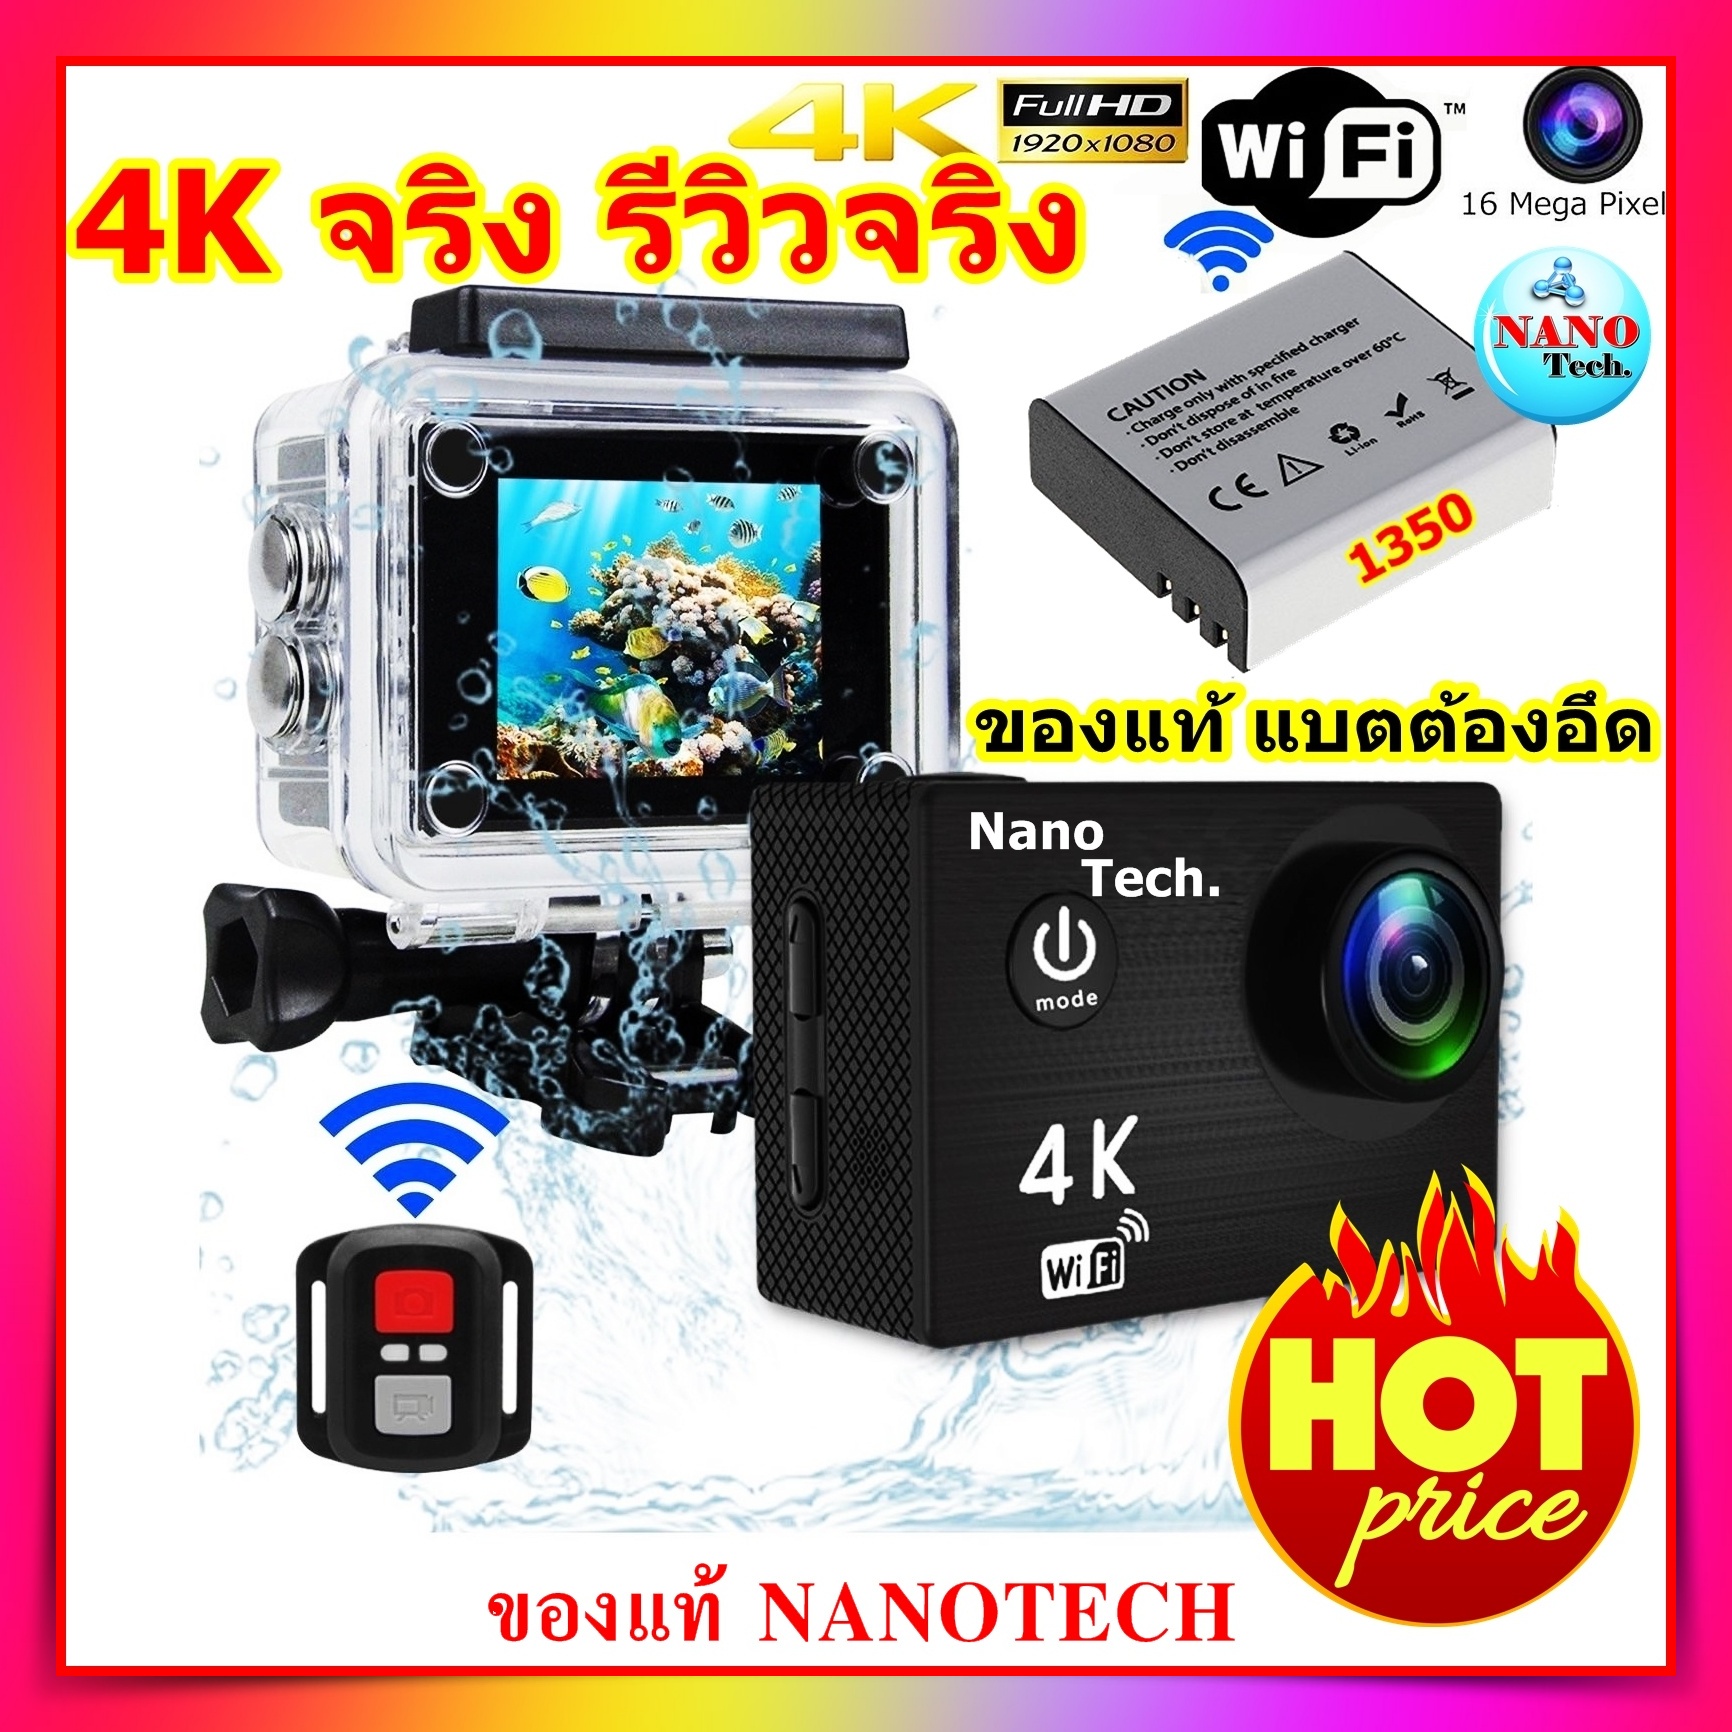 Nanotech กล้องกันน้ำ ถ่ายใต้น้ำ พร้อมรีโมท Sport camera Action camera 4K Ultra HD waterproof WIFI FREE Remote - แบตอึดที่สุดในไทยถึง 1350 Mha